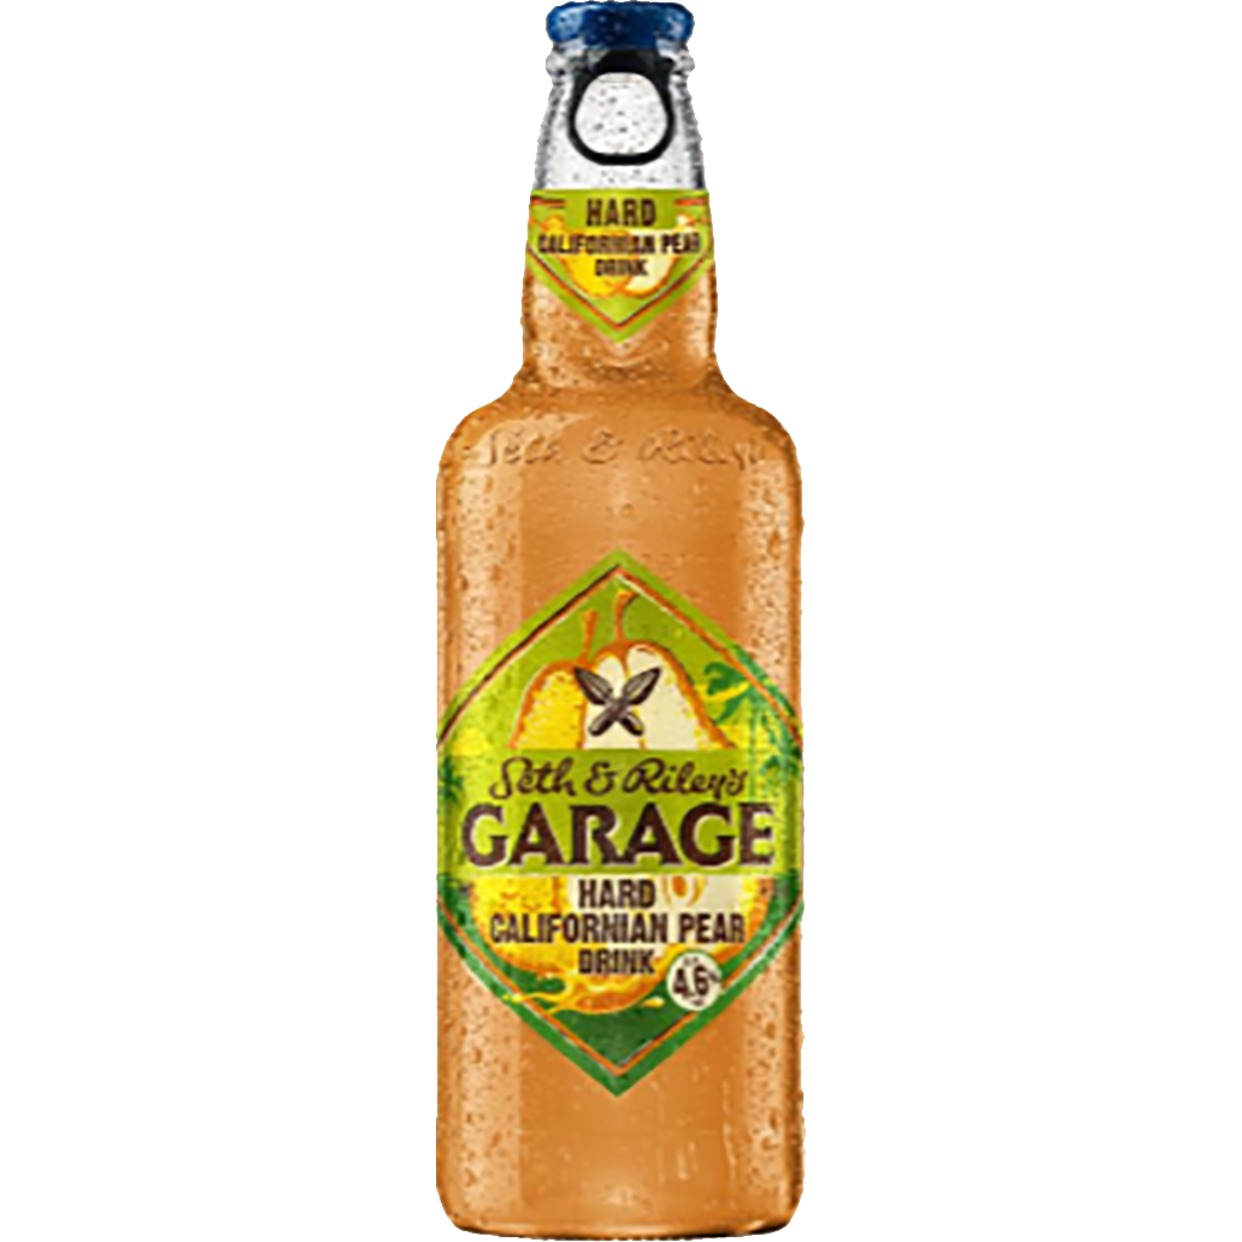 Напиток Seth and Riley’s Garage Hard Californian Pear изготовленный на основе пива пастеризованный, 4.6% 0.44л ст/б